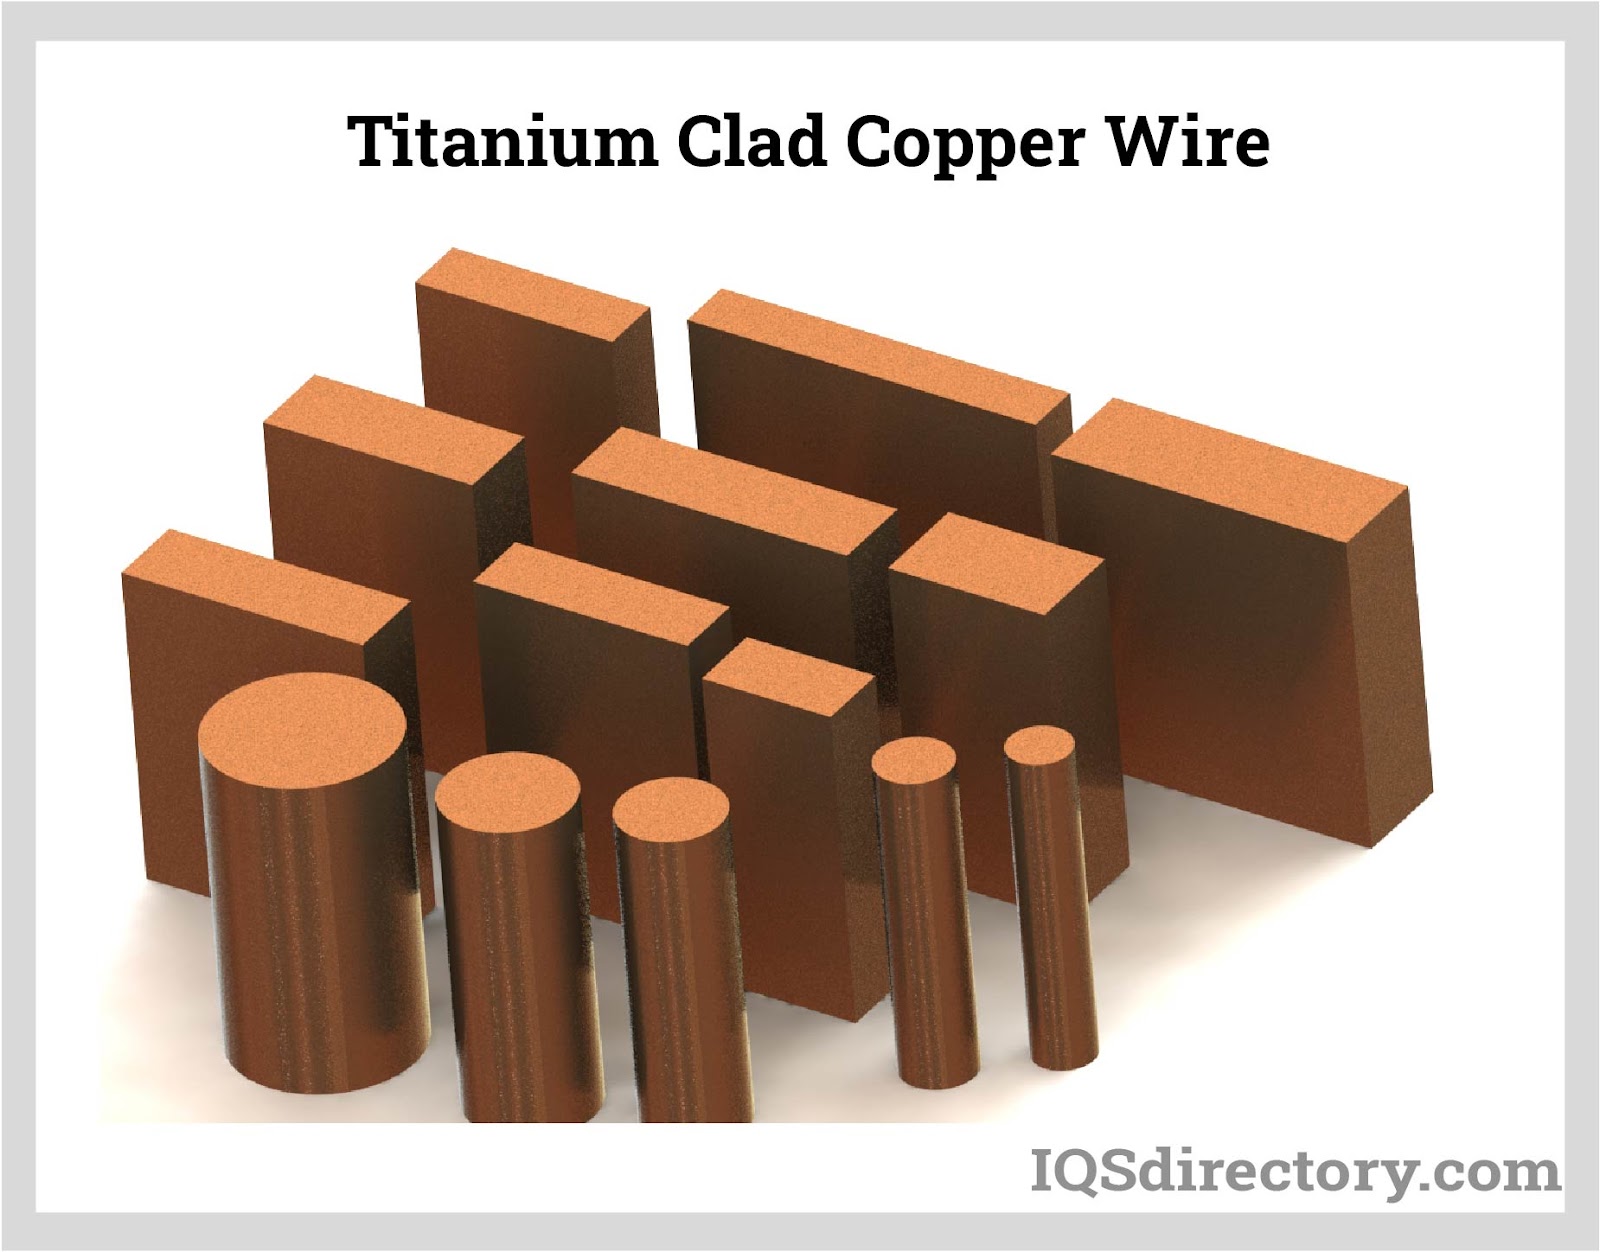 Titanium-Clad Copper Wire